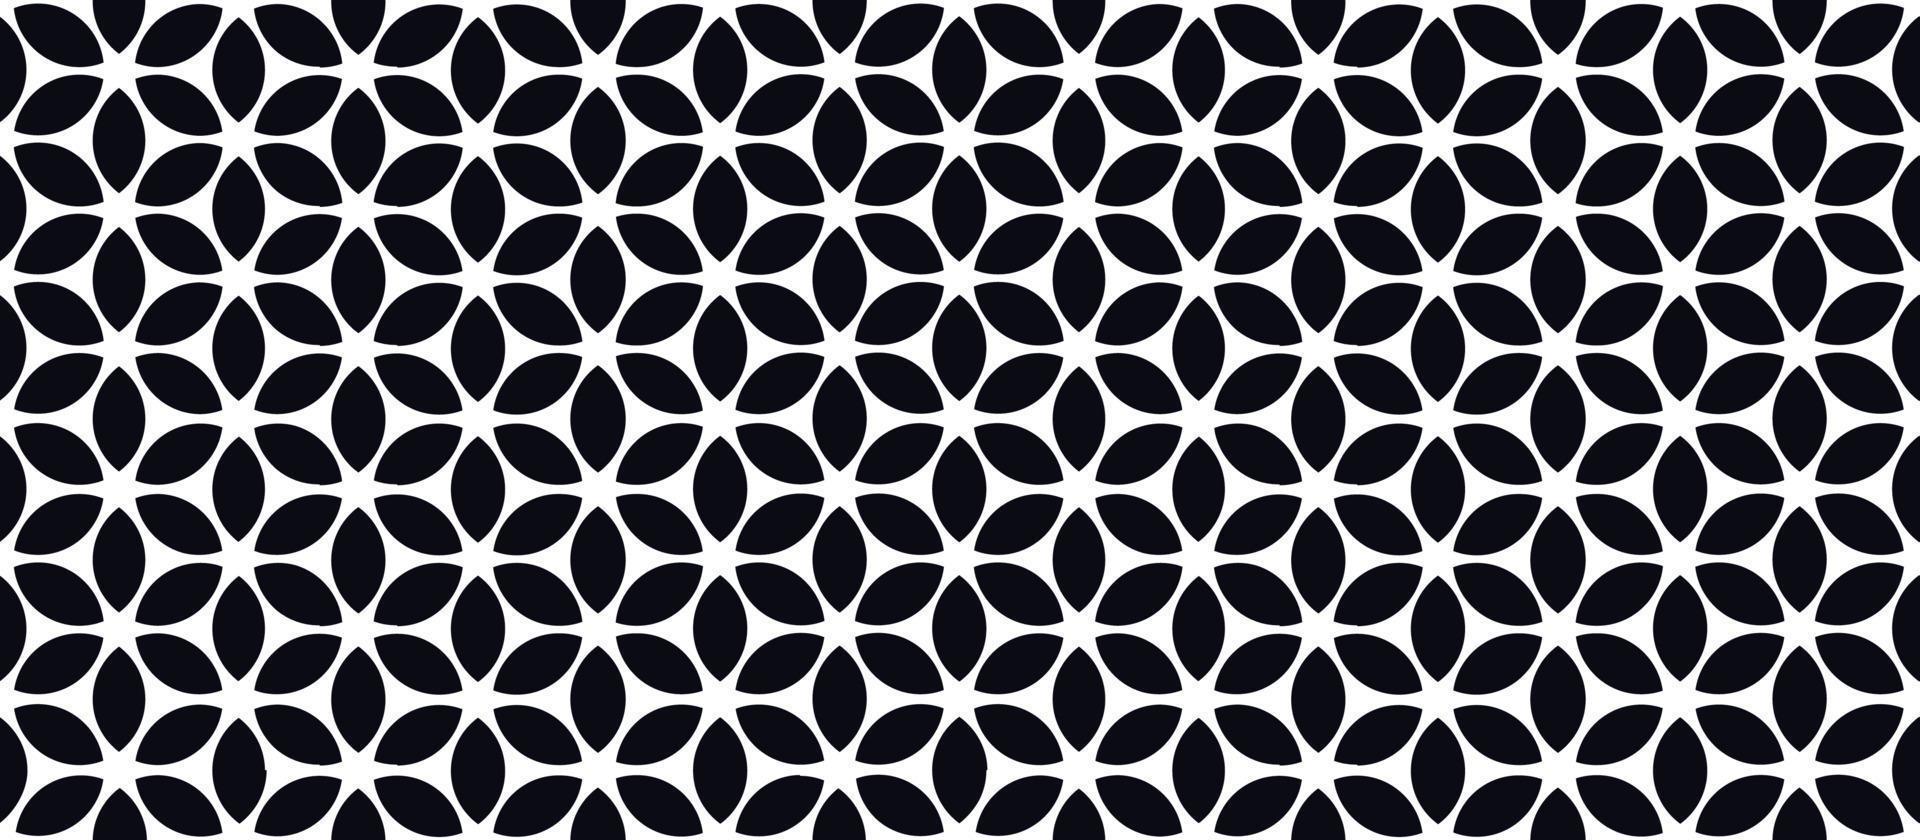 abstraktes nahtloses Muster. künstlerischer geometrischer Zierhintergrund. gut für Stoff-, Textil-, Tapeten- oder Verpackungshintergrunddesign vektor